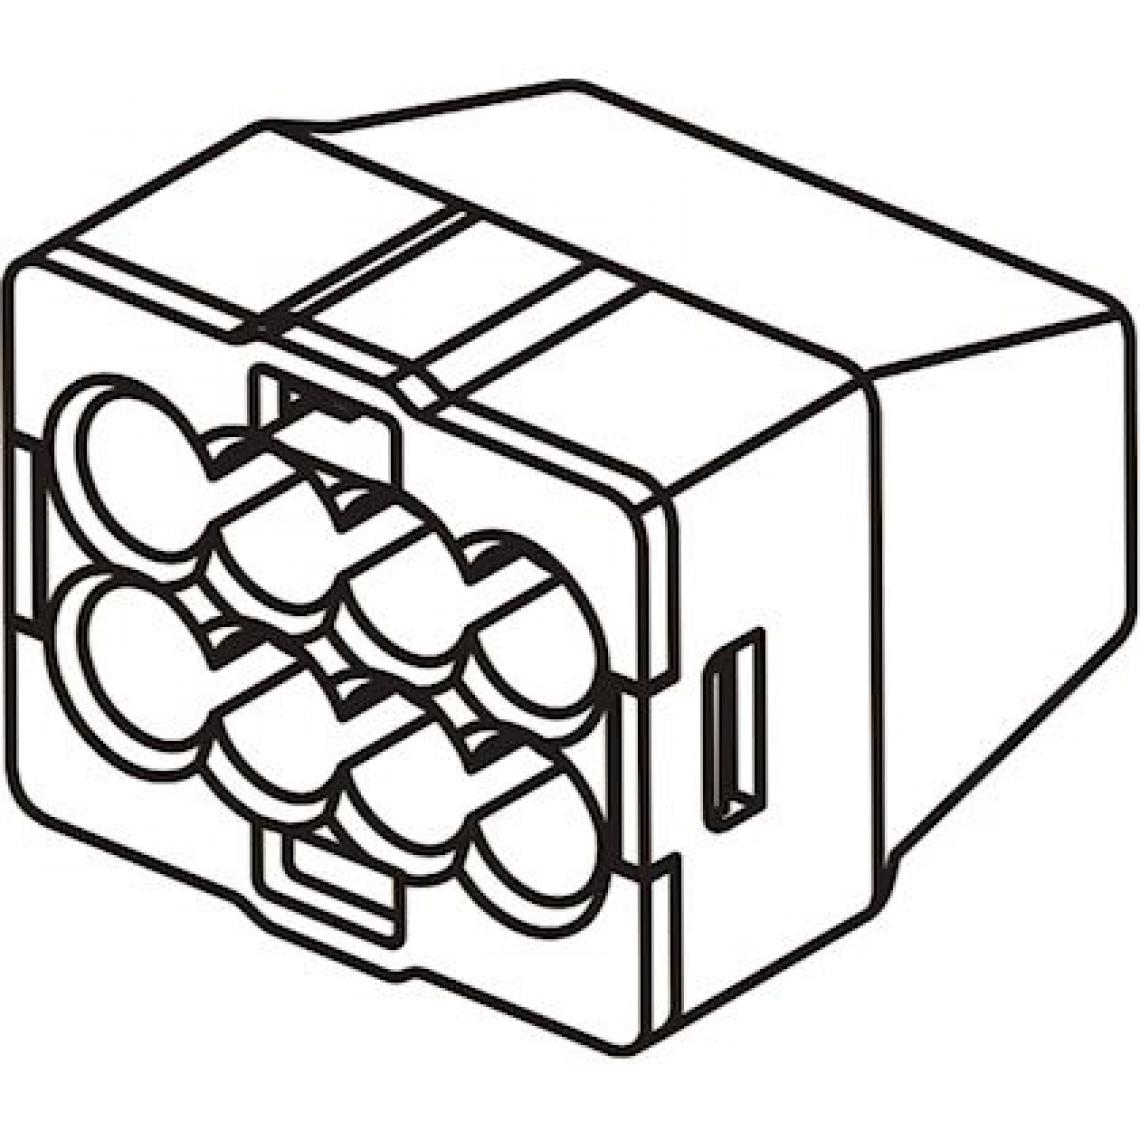 Bizline - borne de connexion - automatique - 8 entrées - 0.5 à 2.5 mm2 - noire - boite de 250 - bizline 103428 - Accessoires de câblage